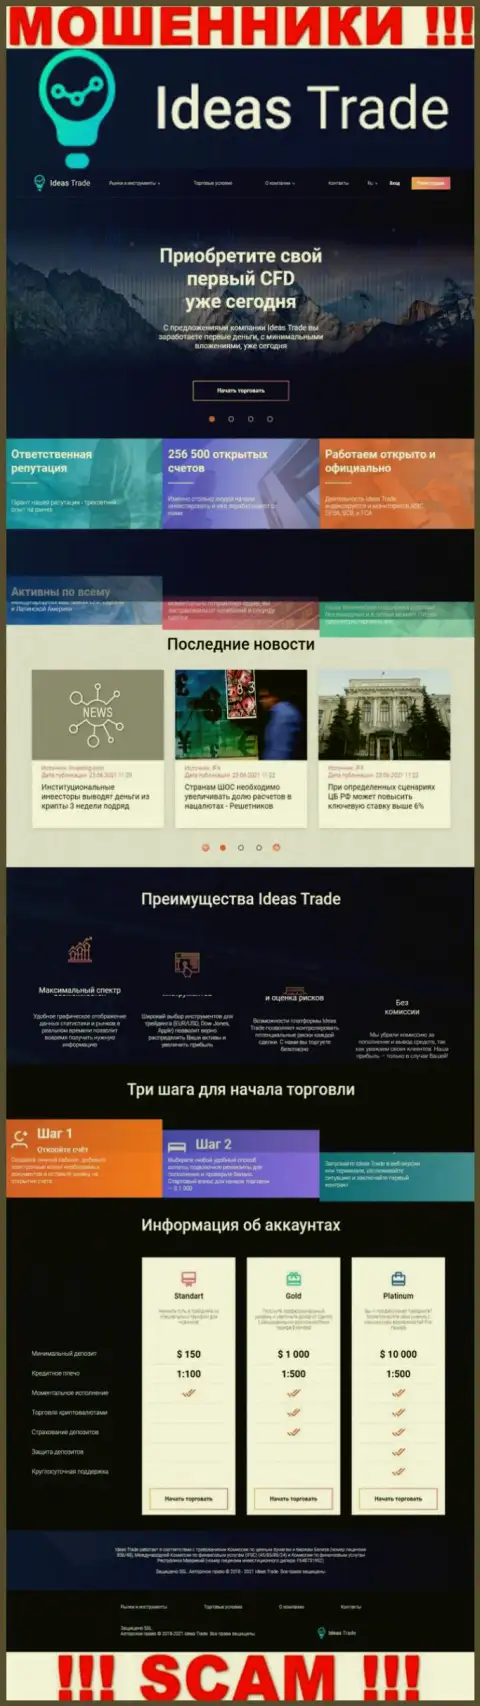 Официальный веб-сайт мошенников Идеас Трейд